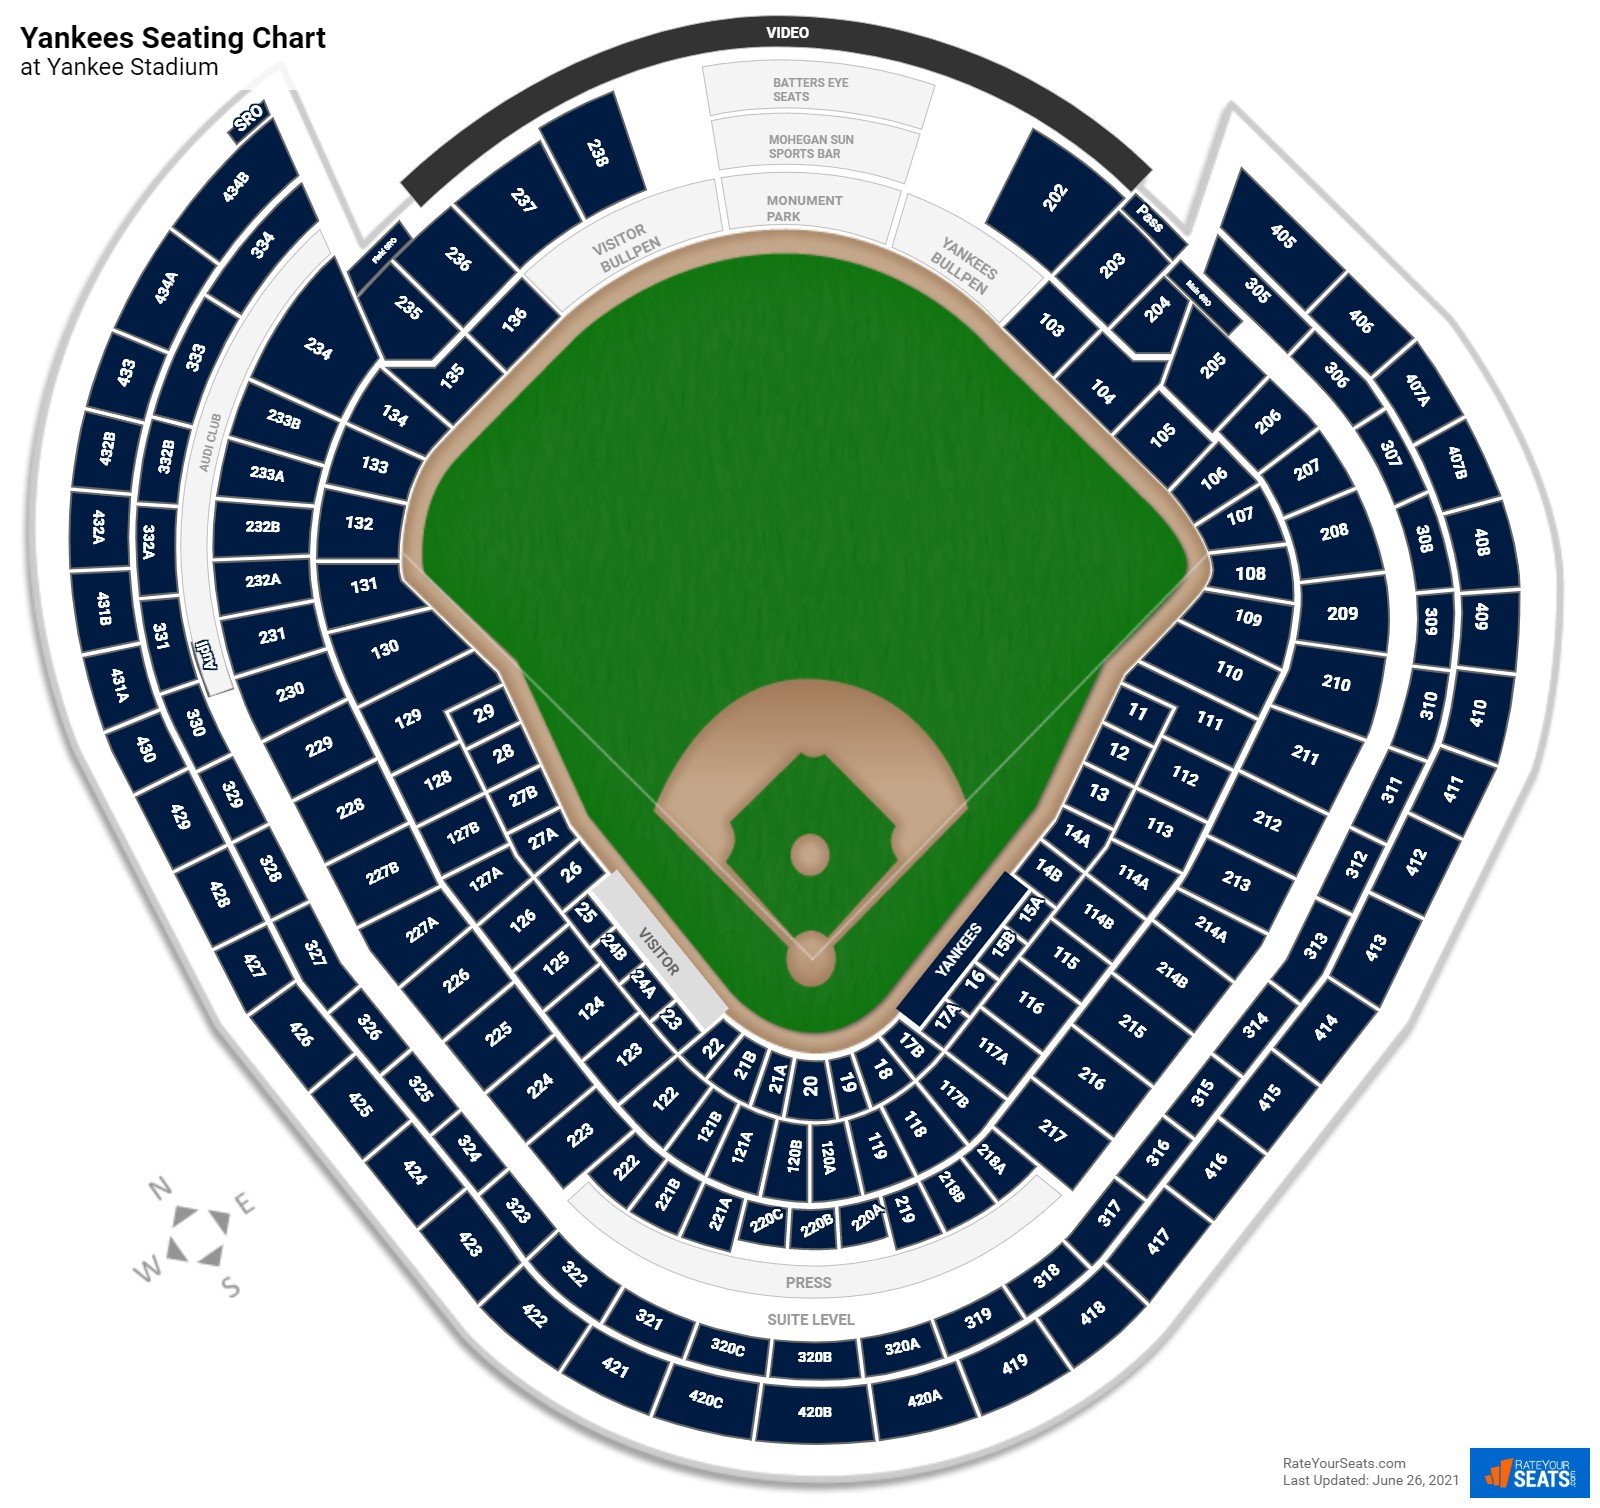 New York Yankees Seating Chart at Yankee Stadium